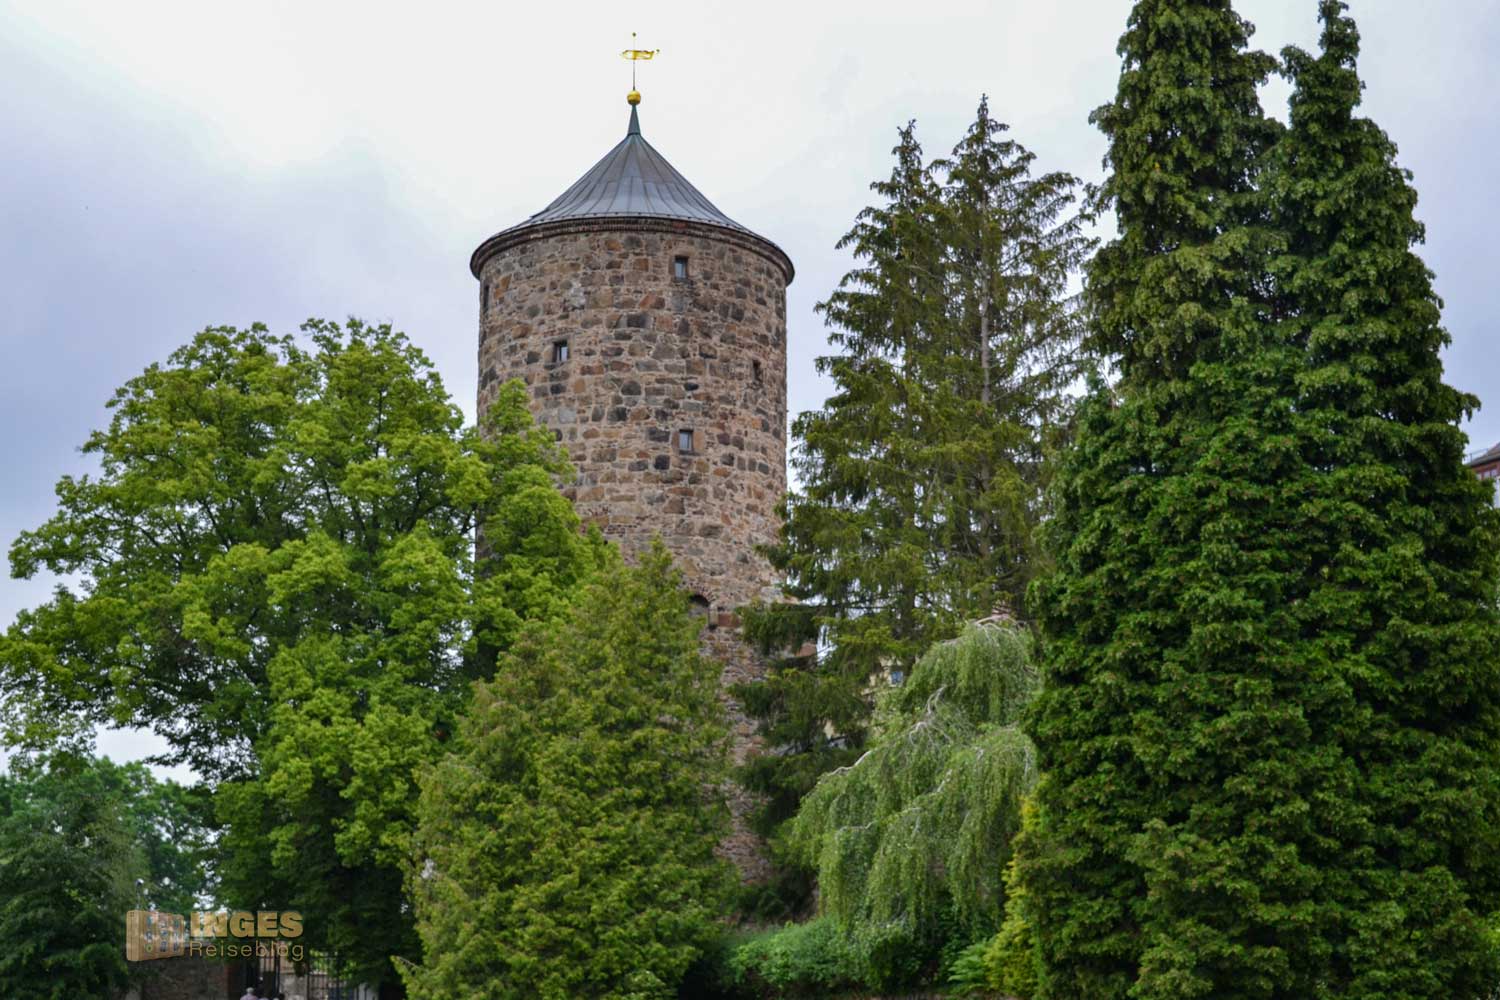 Nikolaiturm in Bautzen